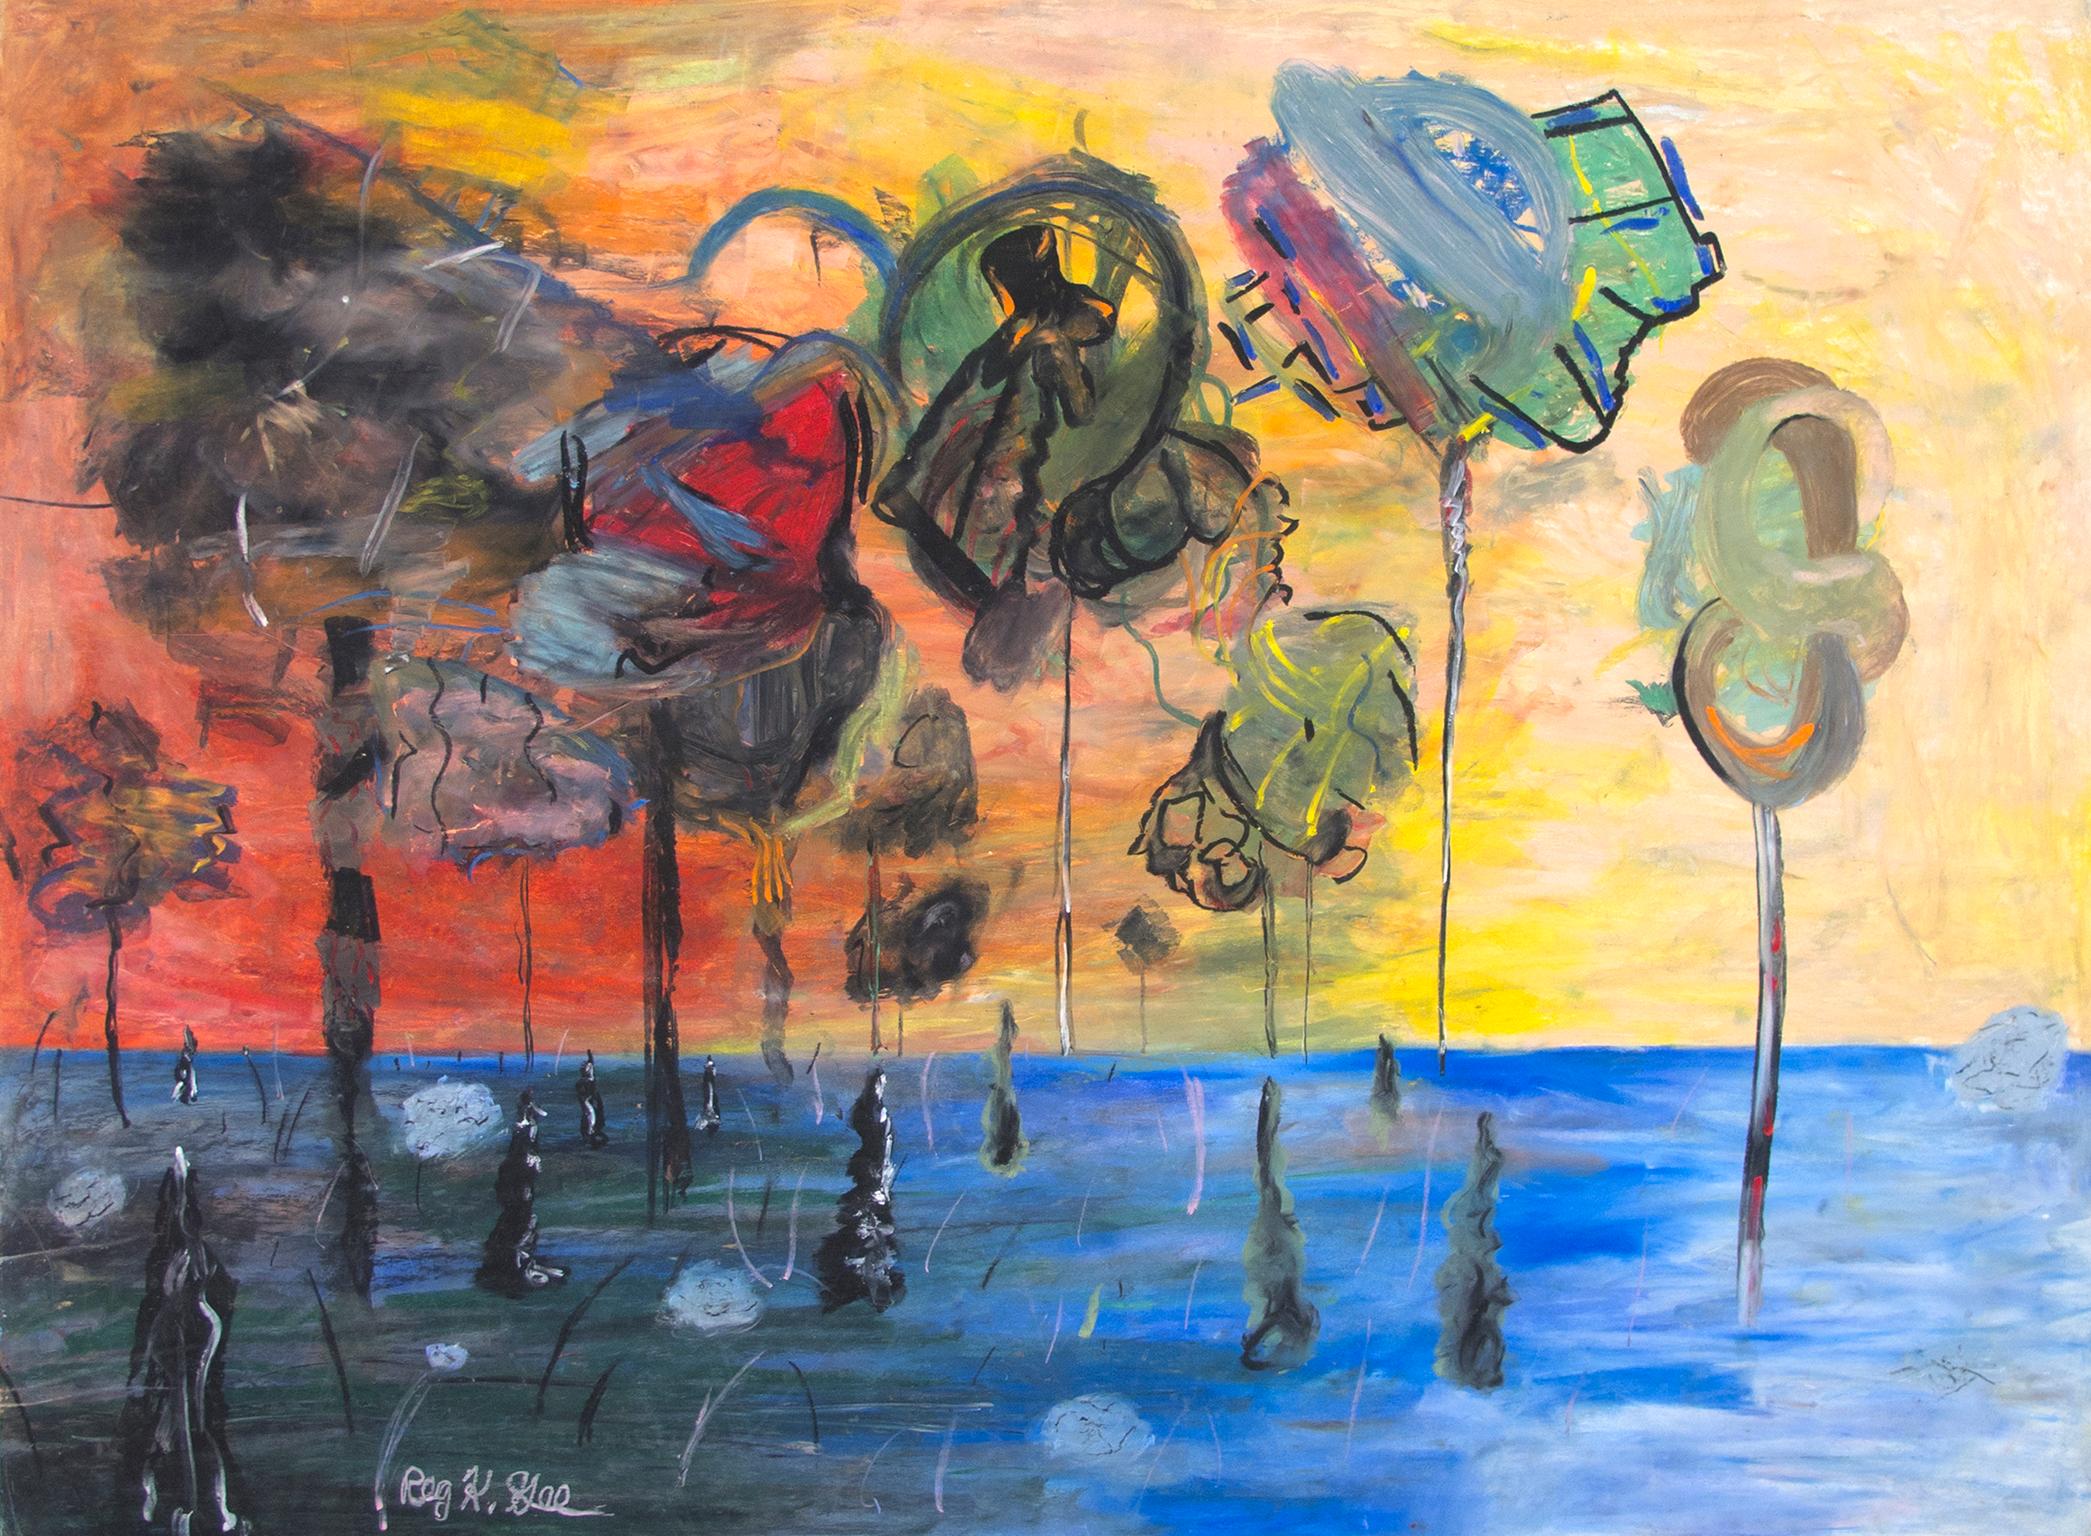 "Points Further Absent Vegetation" ist eine Original-Ölpastellzeichnung auf Illustrationskarton von Reginald K. Gee. Der Künstler hat das Werk unten links signiert. Dieses Werk zeigt eine abstrakte Landschaft mit schwebenden Formen auf blauem Grund.